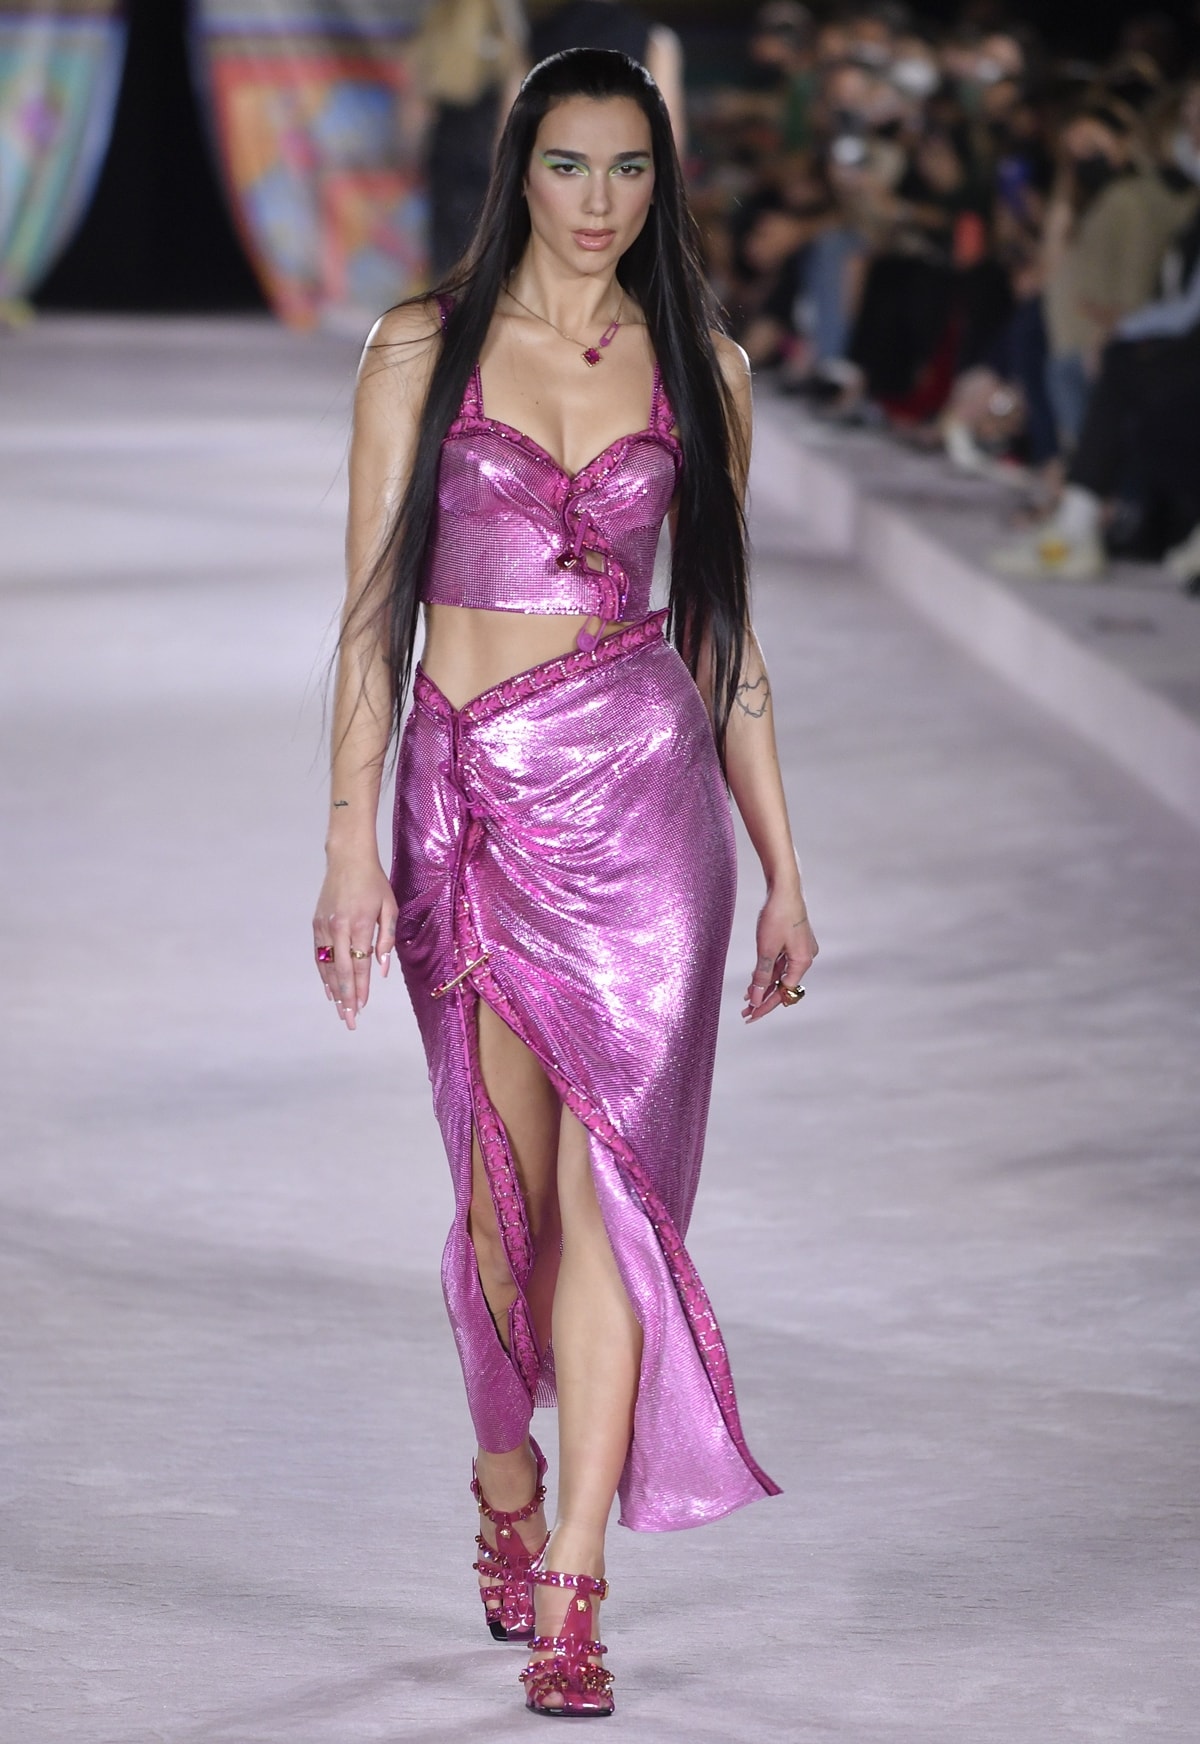 Dua Lipa made her runway debut in the Versace show during Milan Fashion Week